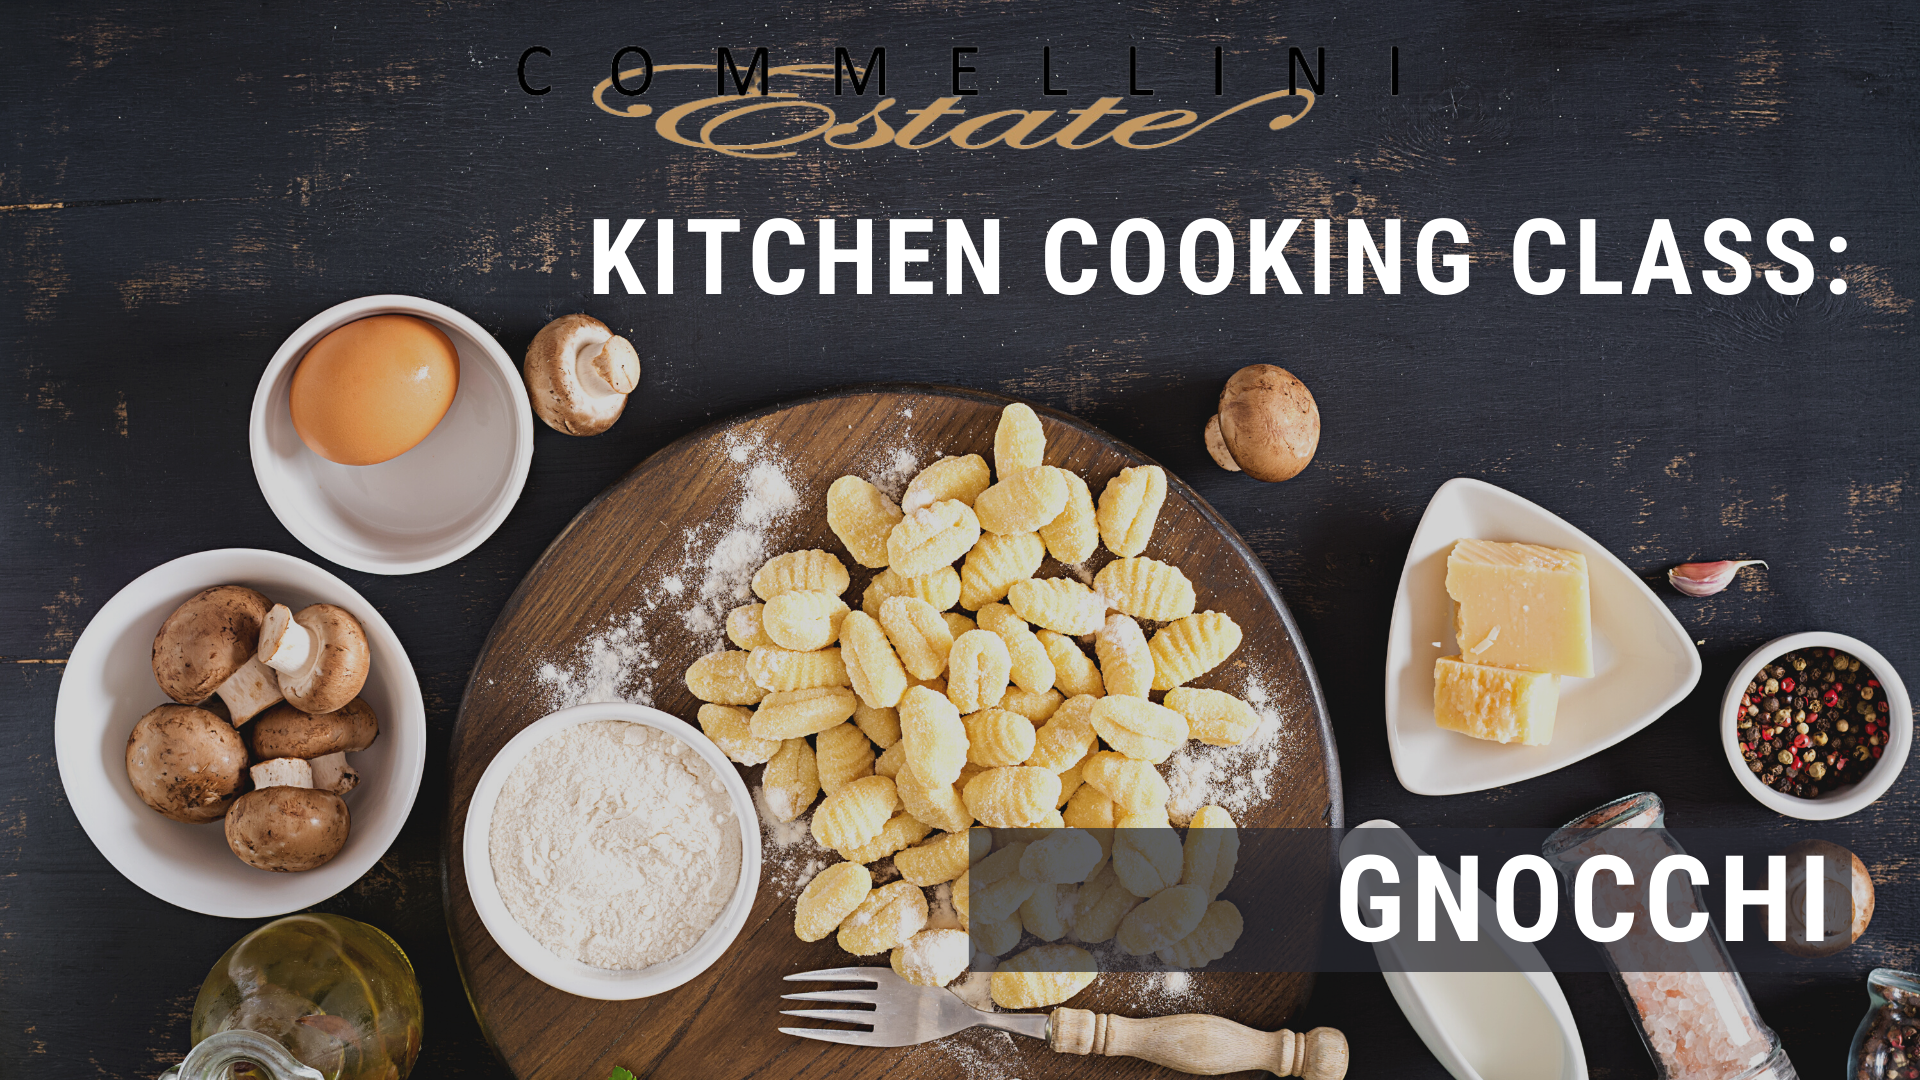 4/13/2022 & 4/14/2022 Kitchen Cooking Class: Gnocchi-Handmade Pasta